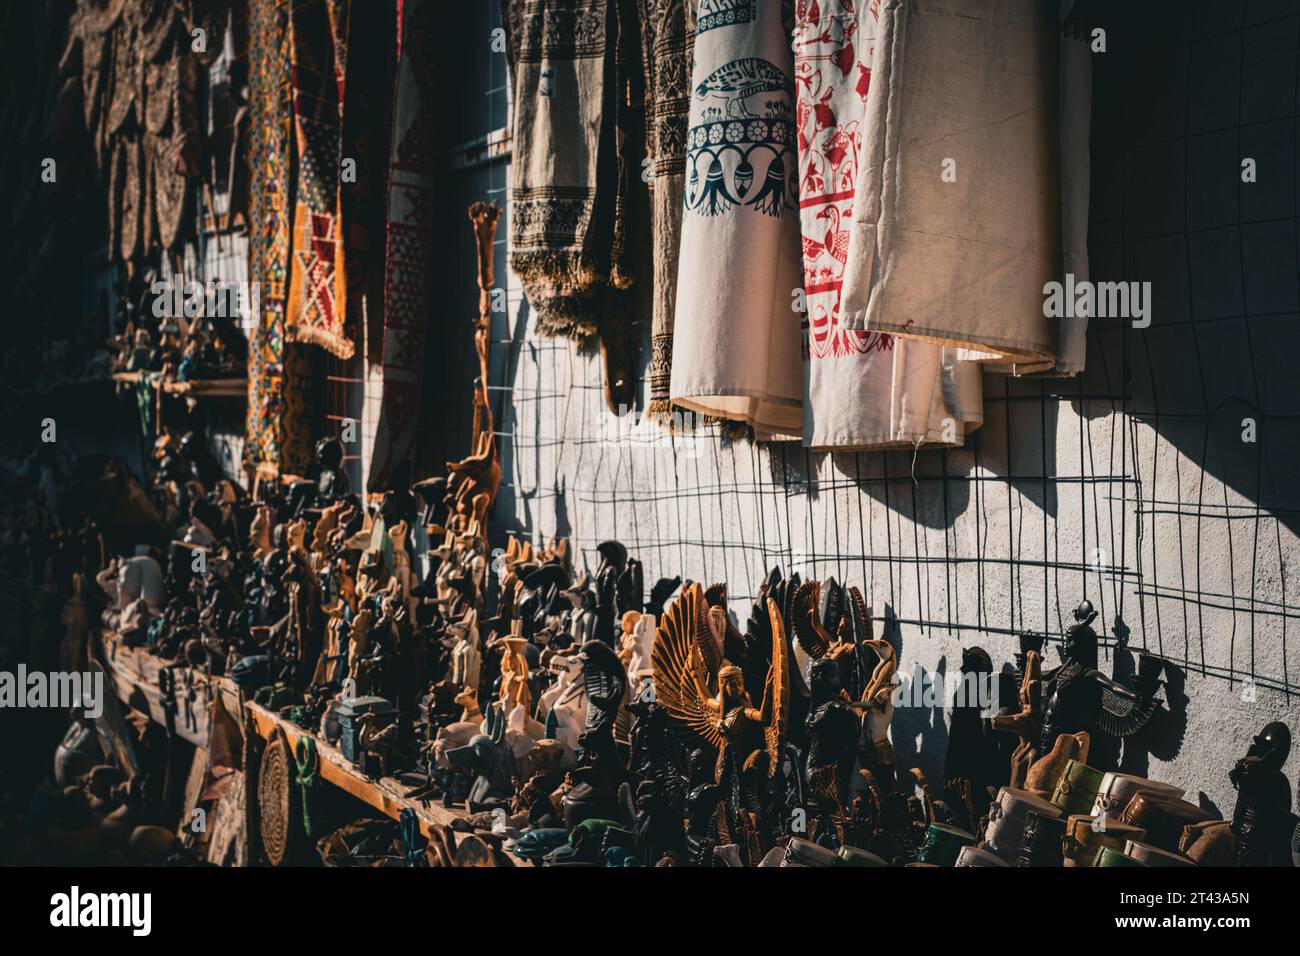 Eine nubische Marktstraße gesäumt von verschiedenen Ständen, die Textilien, Gewürze und Kunsthandwerk verkaufen Stockfoto